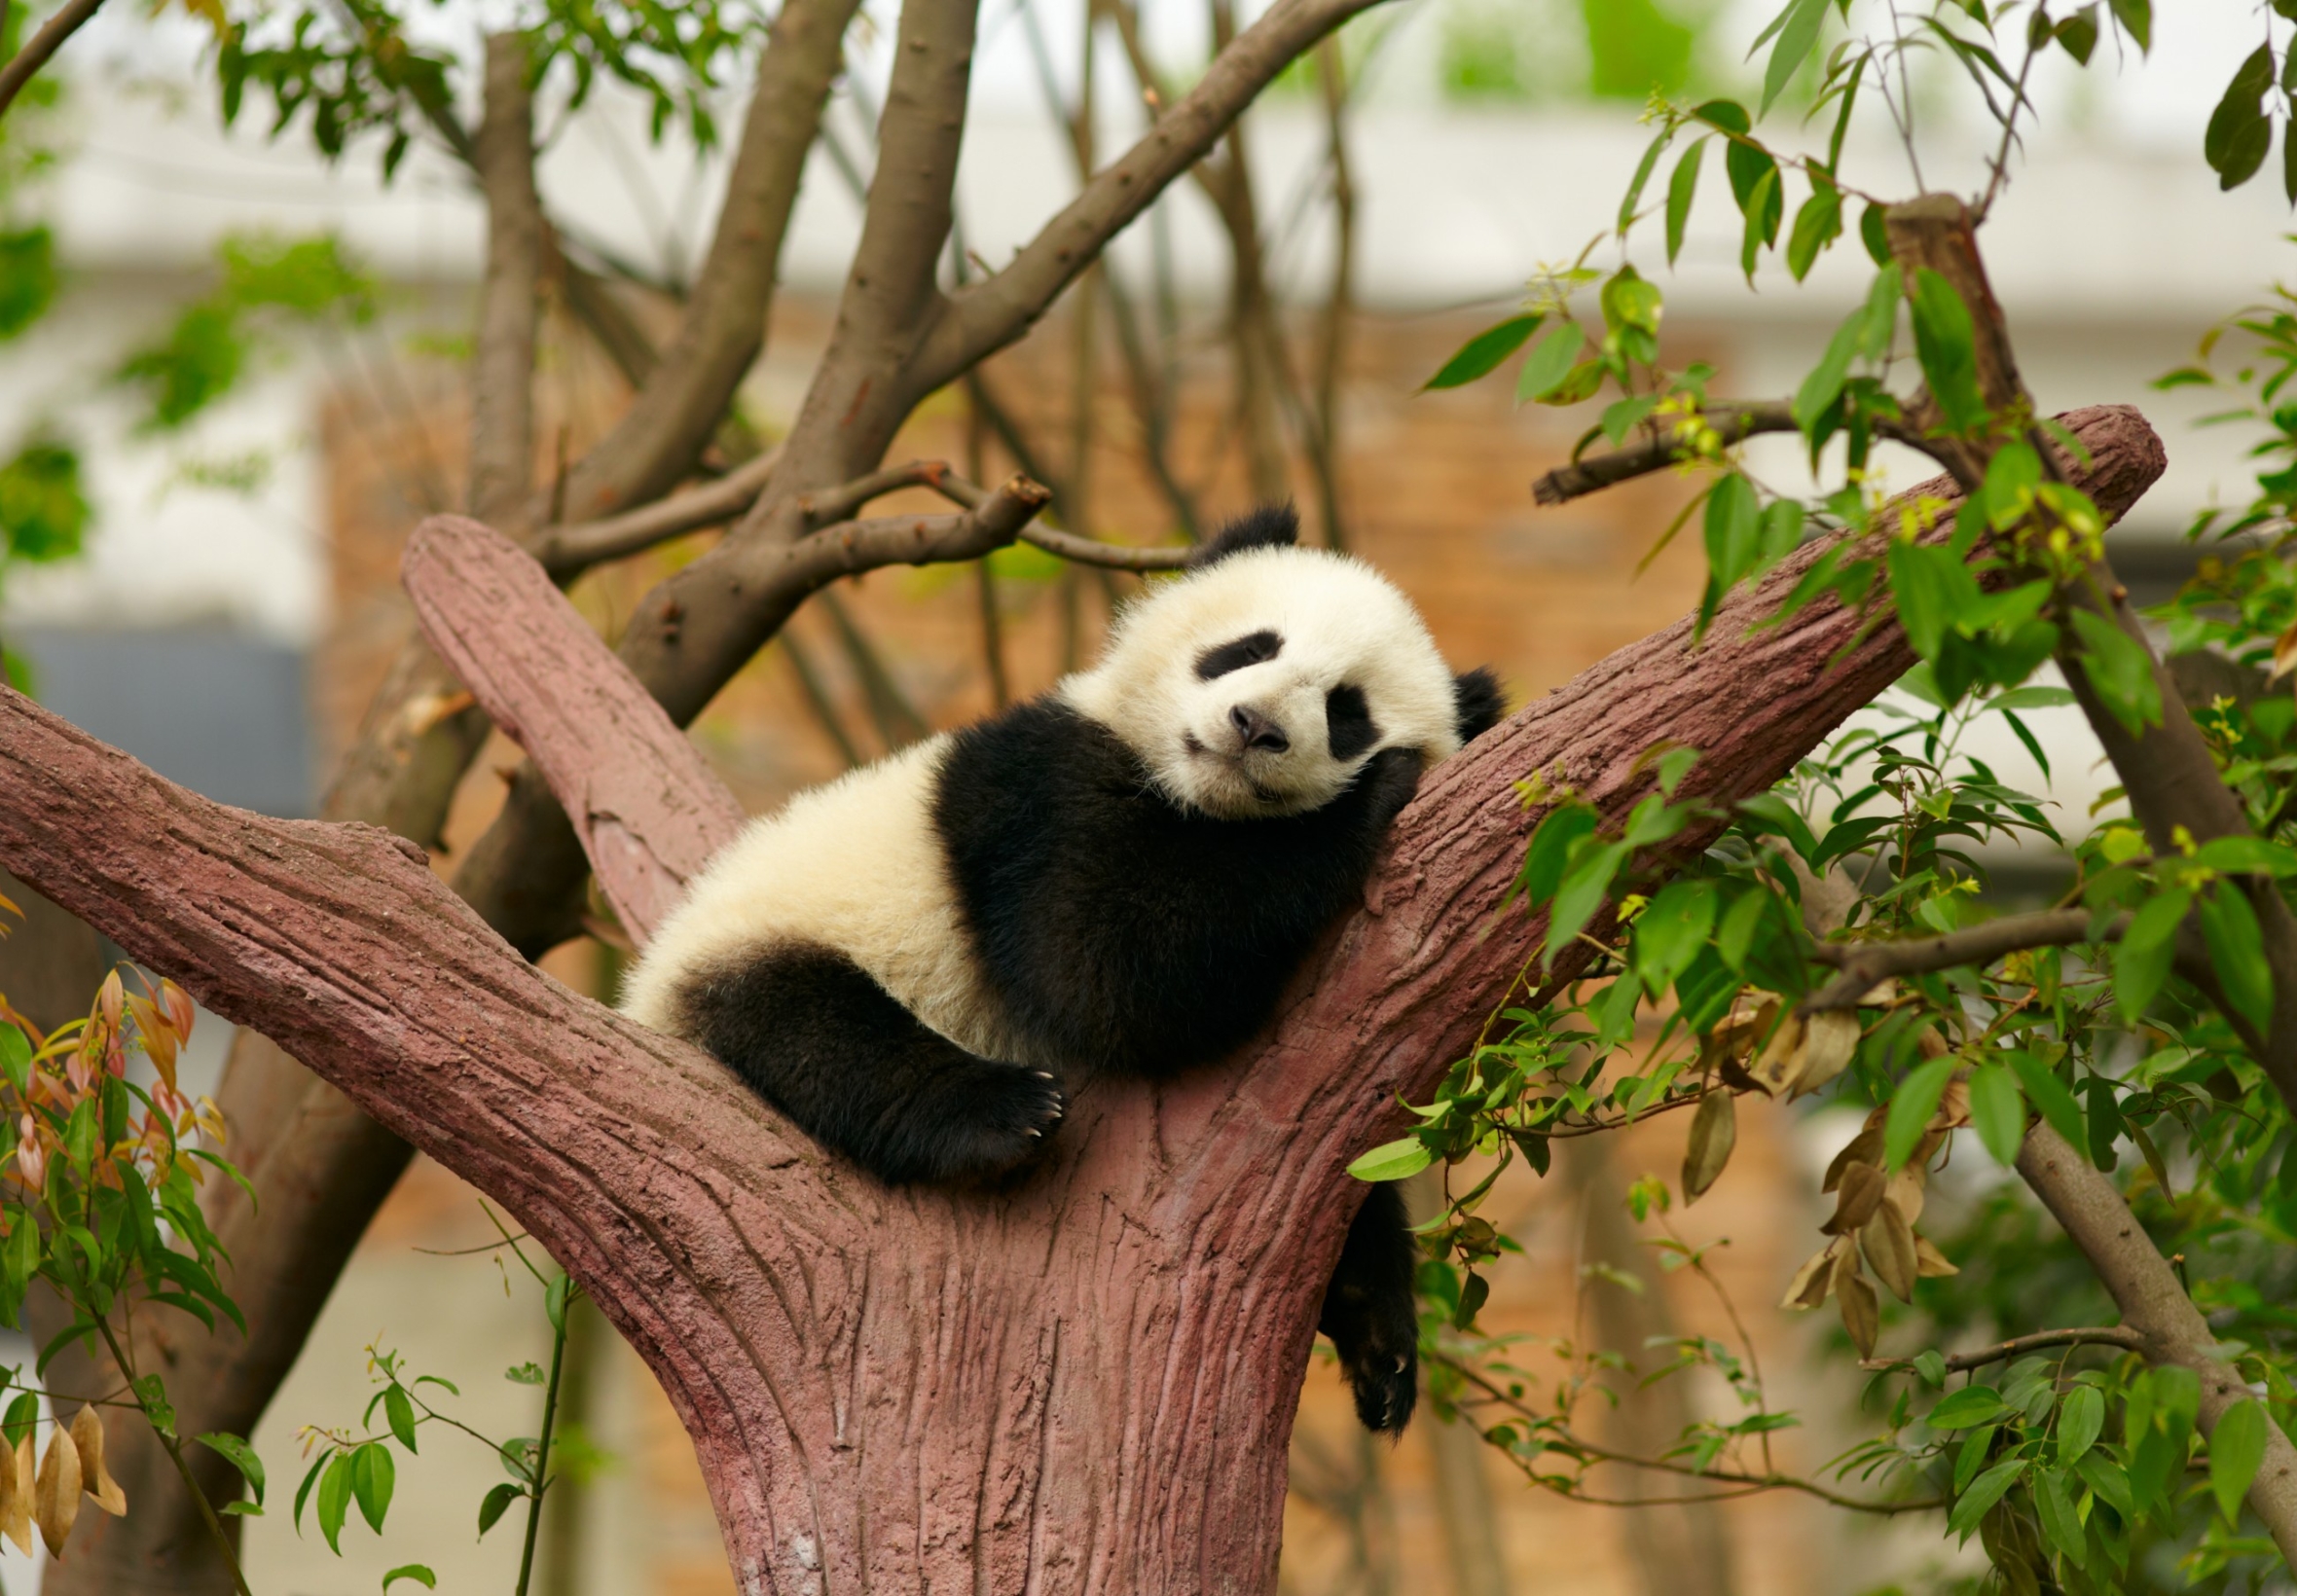 Download mobile wallpaper Animal, Panda, Sleeping, Baby Animal for free.